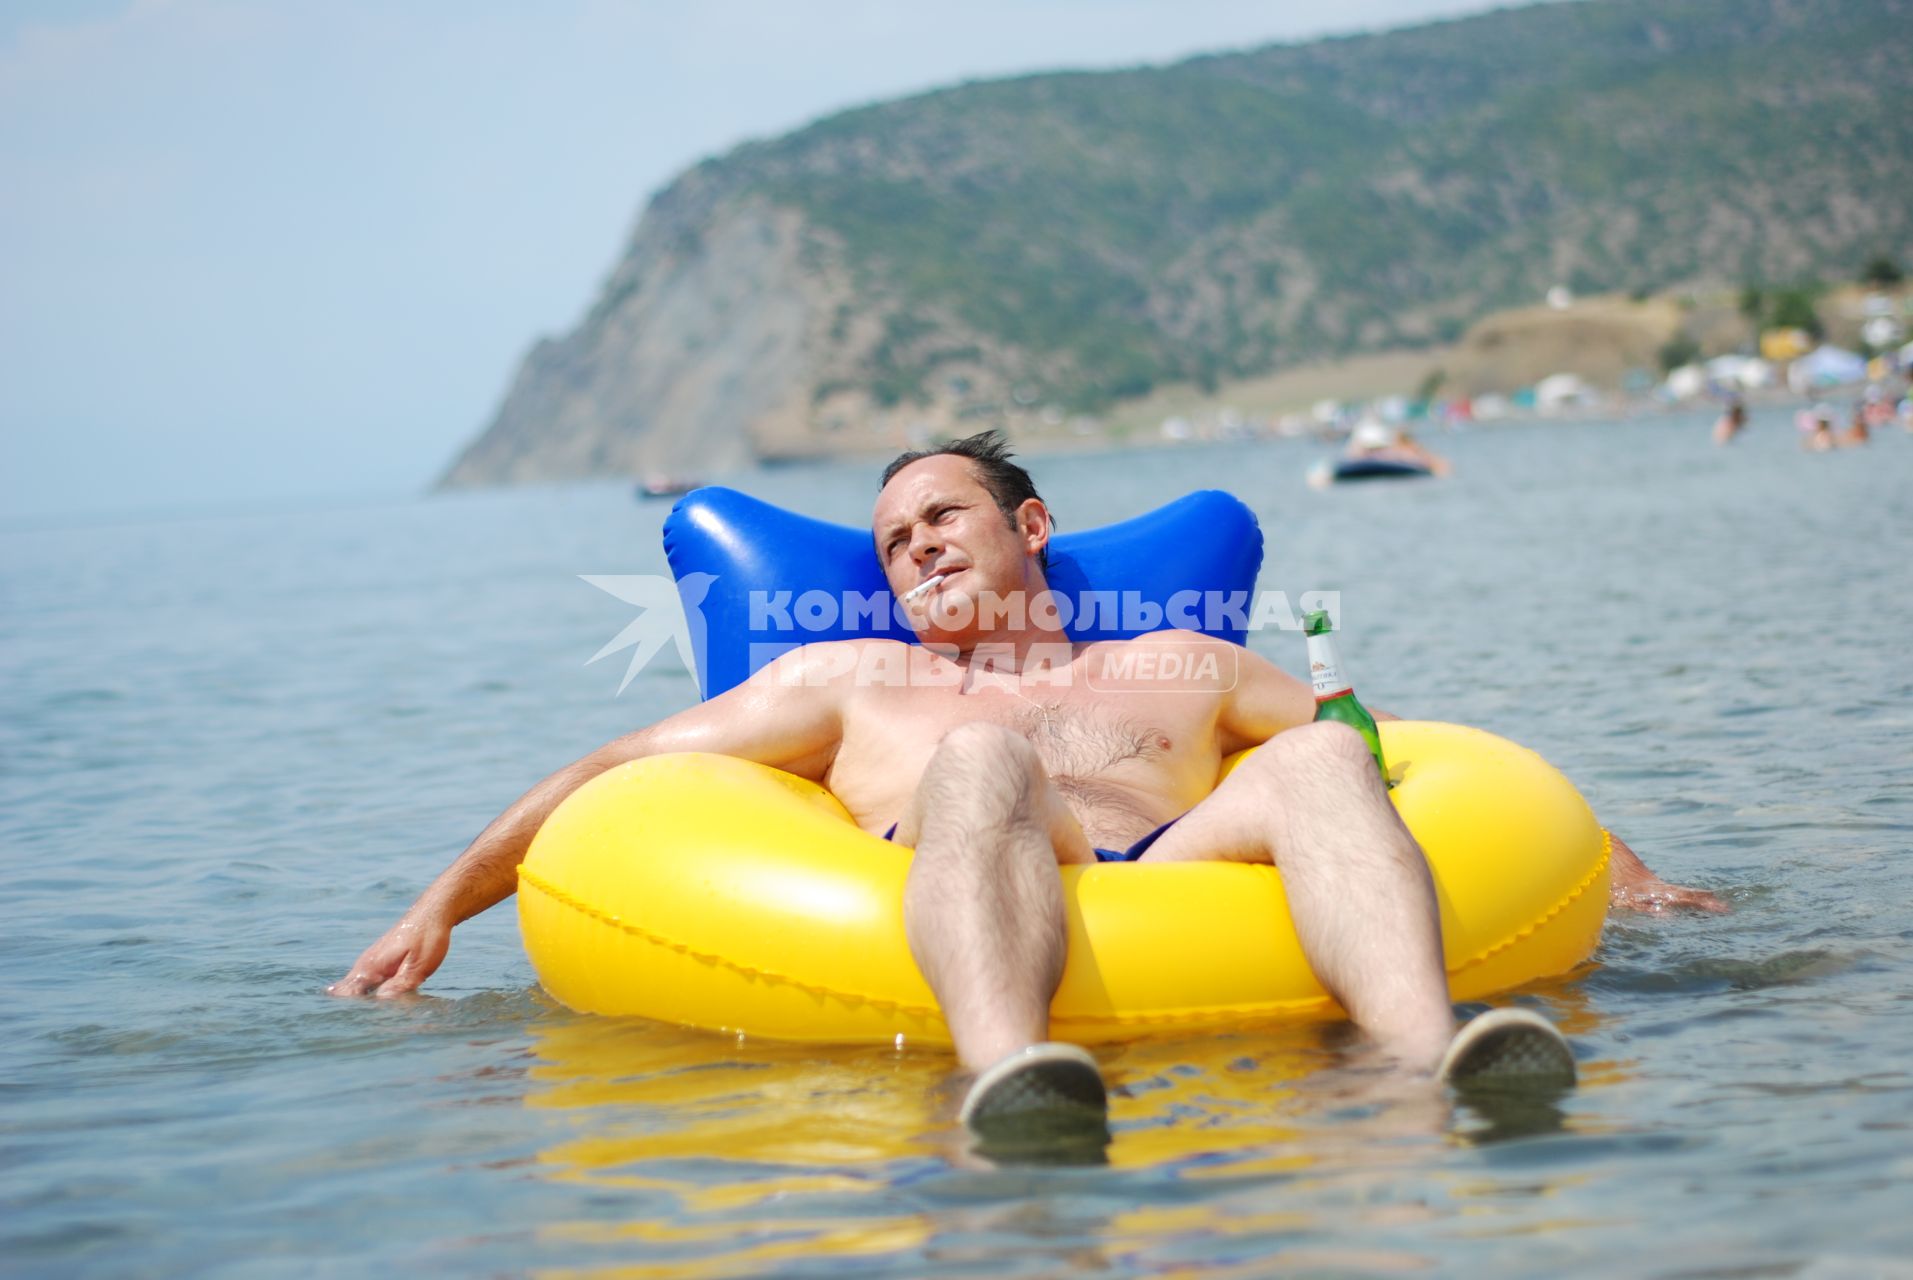 Отдых в Крыму. На снимке: мужчина с сигаретой и бутылкой пива отдыхает на надувной круге в море и ему хорошо.